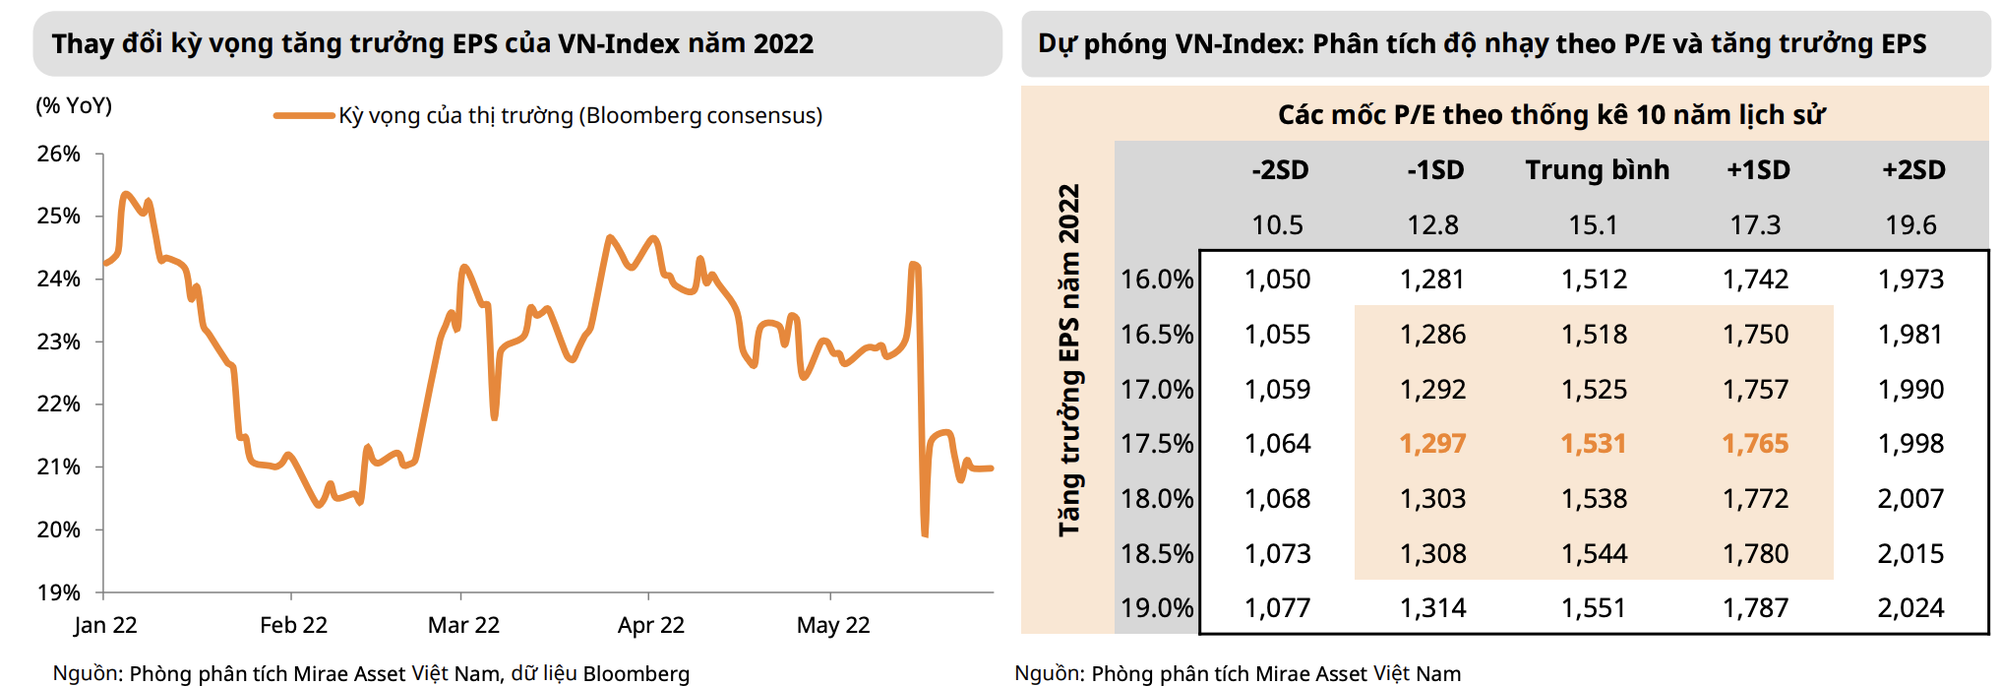 Định giá thị trường chứng khoán Việt Nam đang trở nên hấp dẫn hơn sau đợt điều chỉnh - Ảnh 4.